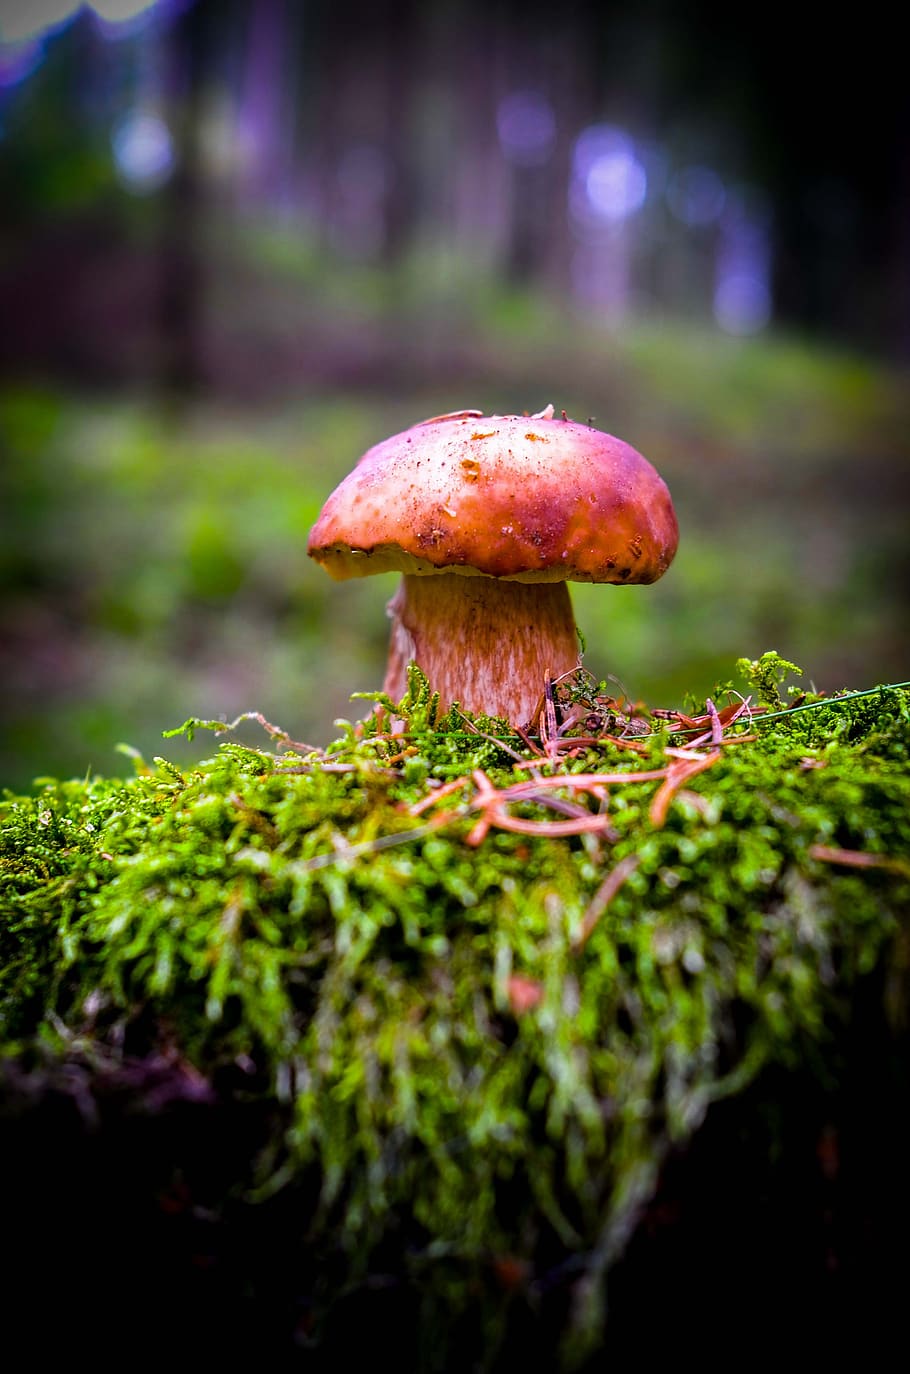 cep, mushroom, forest, nature, autumn, edible, mushrooms, noble rot, herrenpilz, forest mushroom